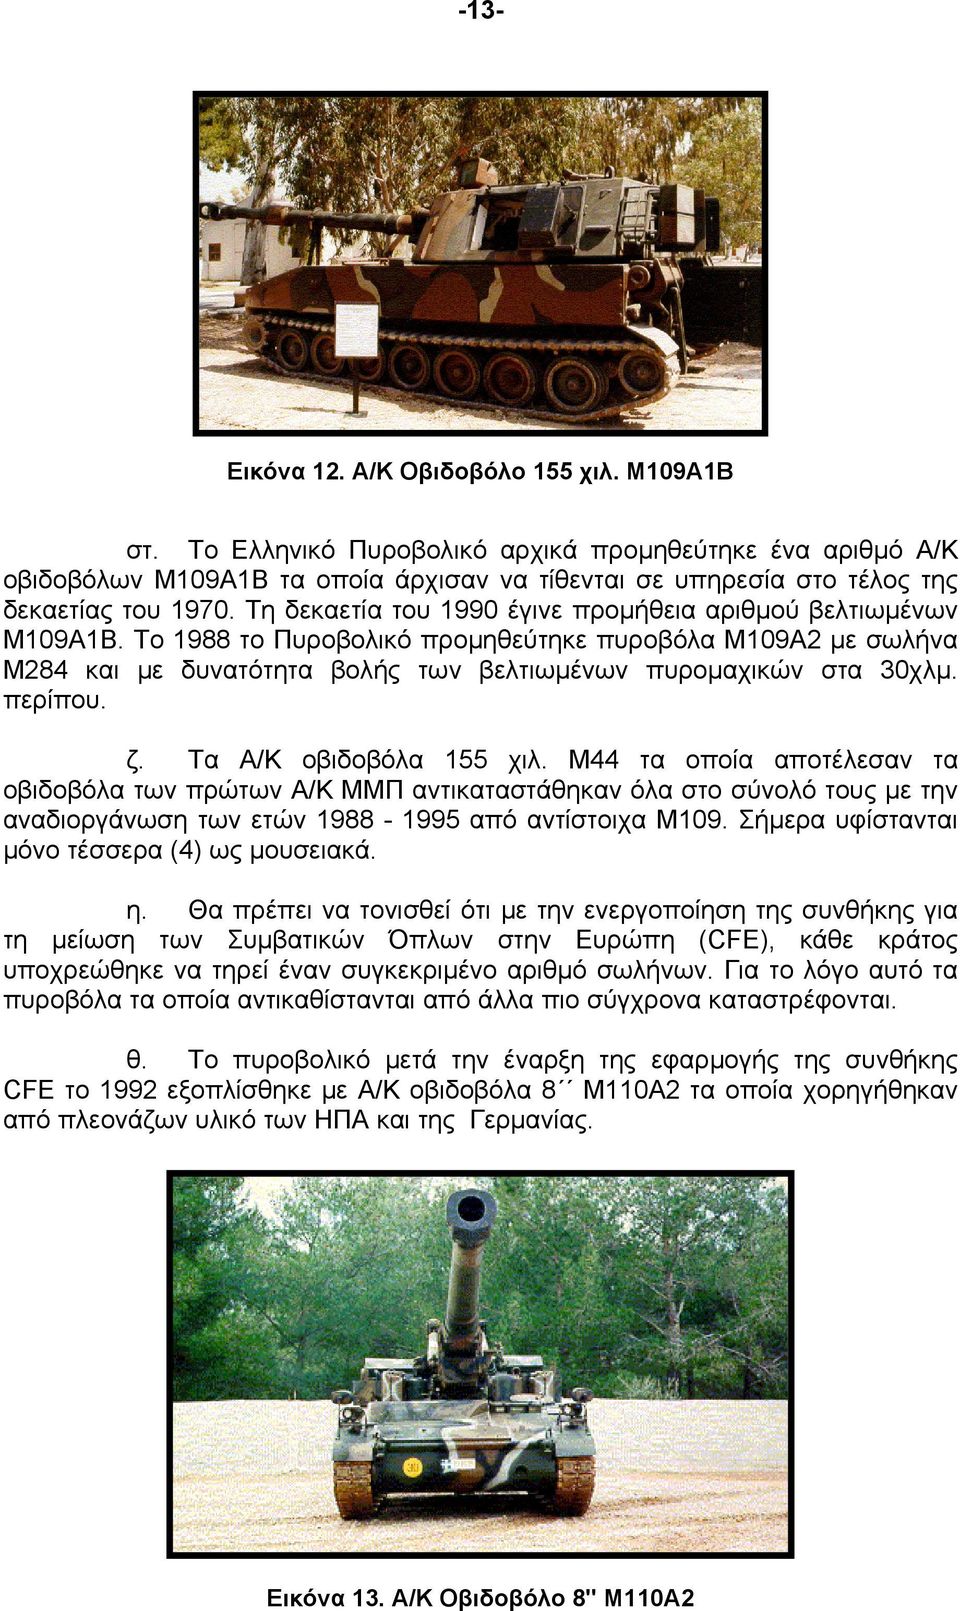 Τη δεκαετία του 1990 έγινε προμήθεια αριθμού βελτιωμένων Μ109Α1Β. Το 1988 το Πυροβολικό προμηθεύτηκε πυροβόλα Μ109Α2 με σωλήνα Μ284 και με δυνατότητα βολής των βελτιωμένων πυρομαχικών στα 30χλμ.